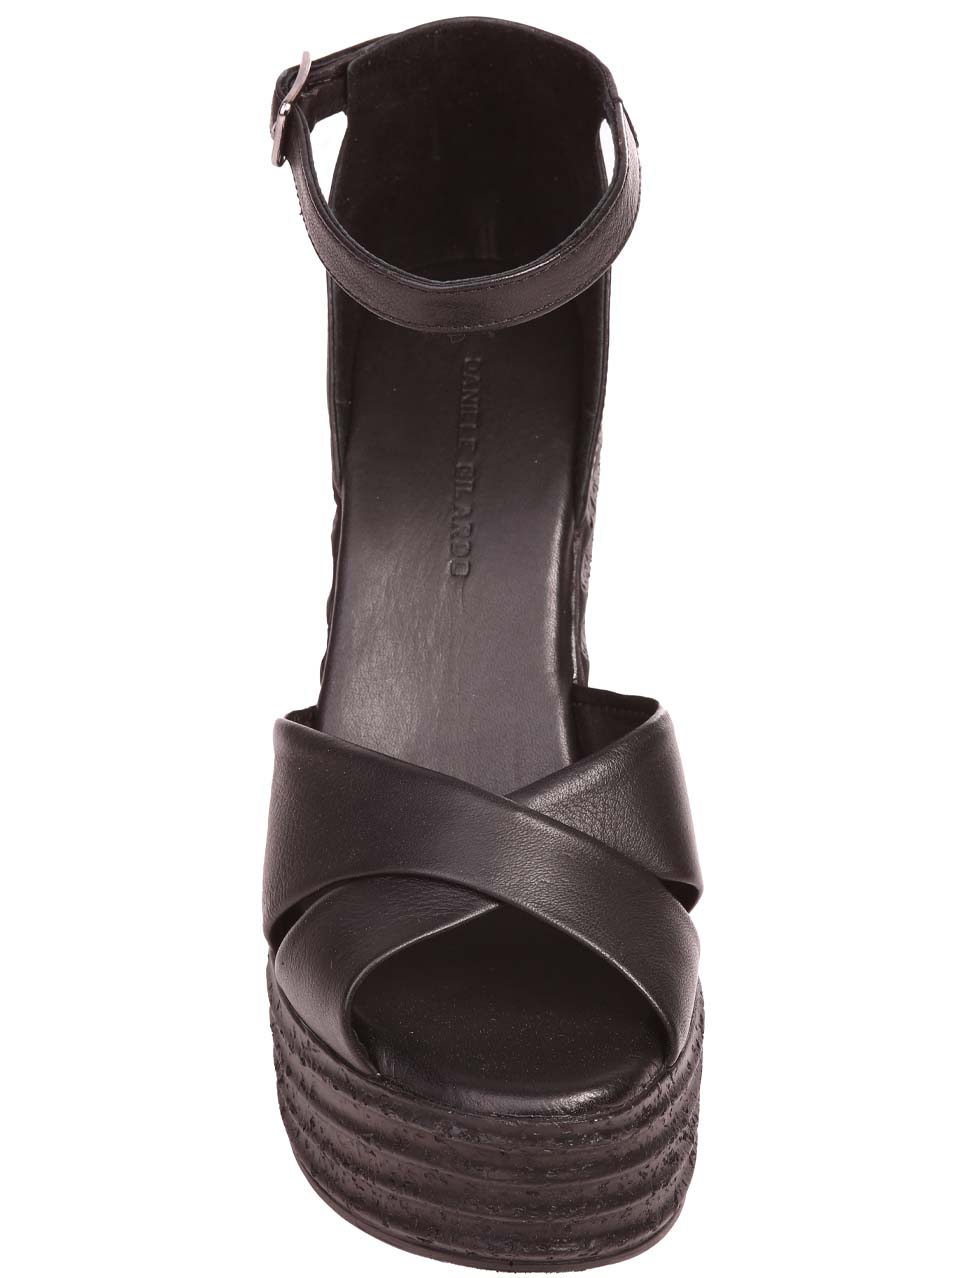 Ежедневни дамски сандали на платформа от естествена кожа в черно 4AT-24343 black